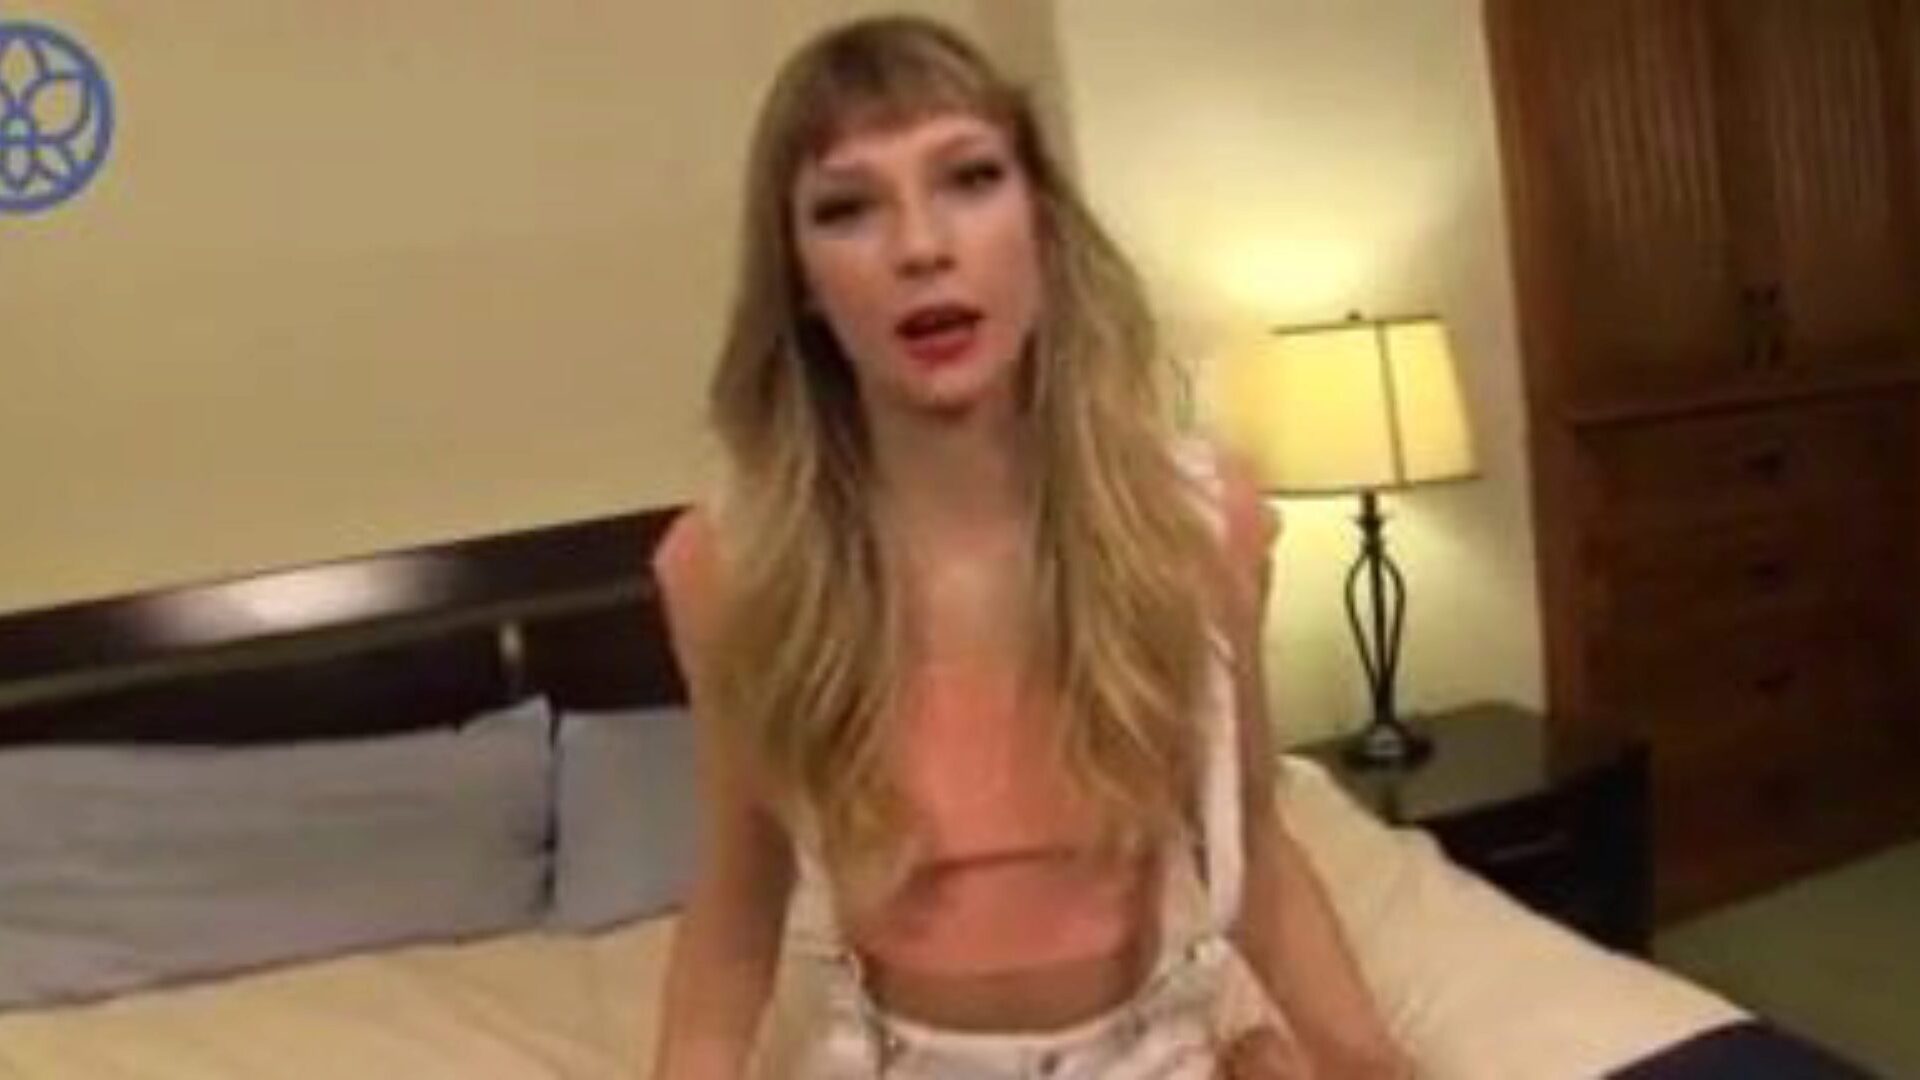 Taylor Swift zerżnięta przed kamerą, darmowe filmy porno z ręczną robotą d6 oglądaj Taylor Swift zerżnięta przed kamerą odcinek na xhamster, superlatywny kanał sieciowy fuckfest z mnóstwem ręcznej roboty piosenkarki i podobnej sceny porno